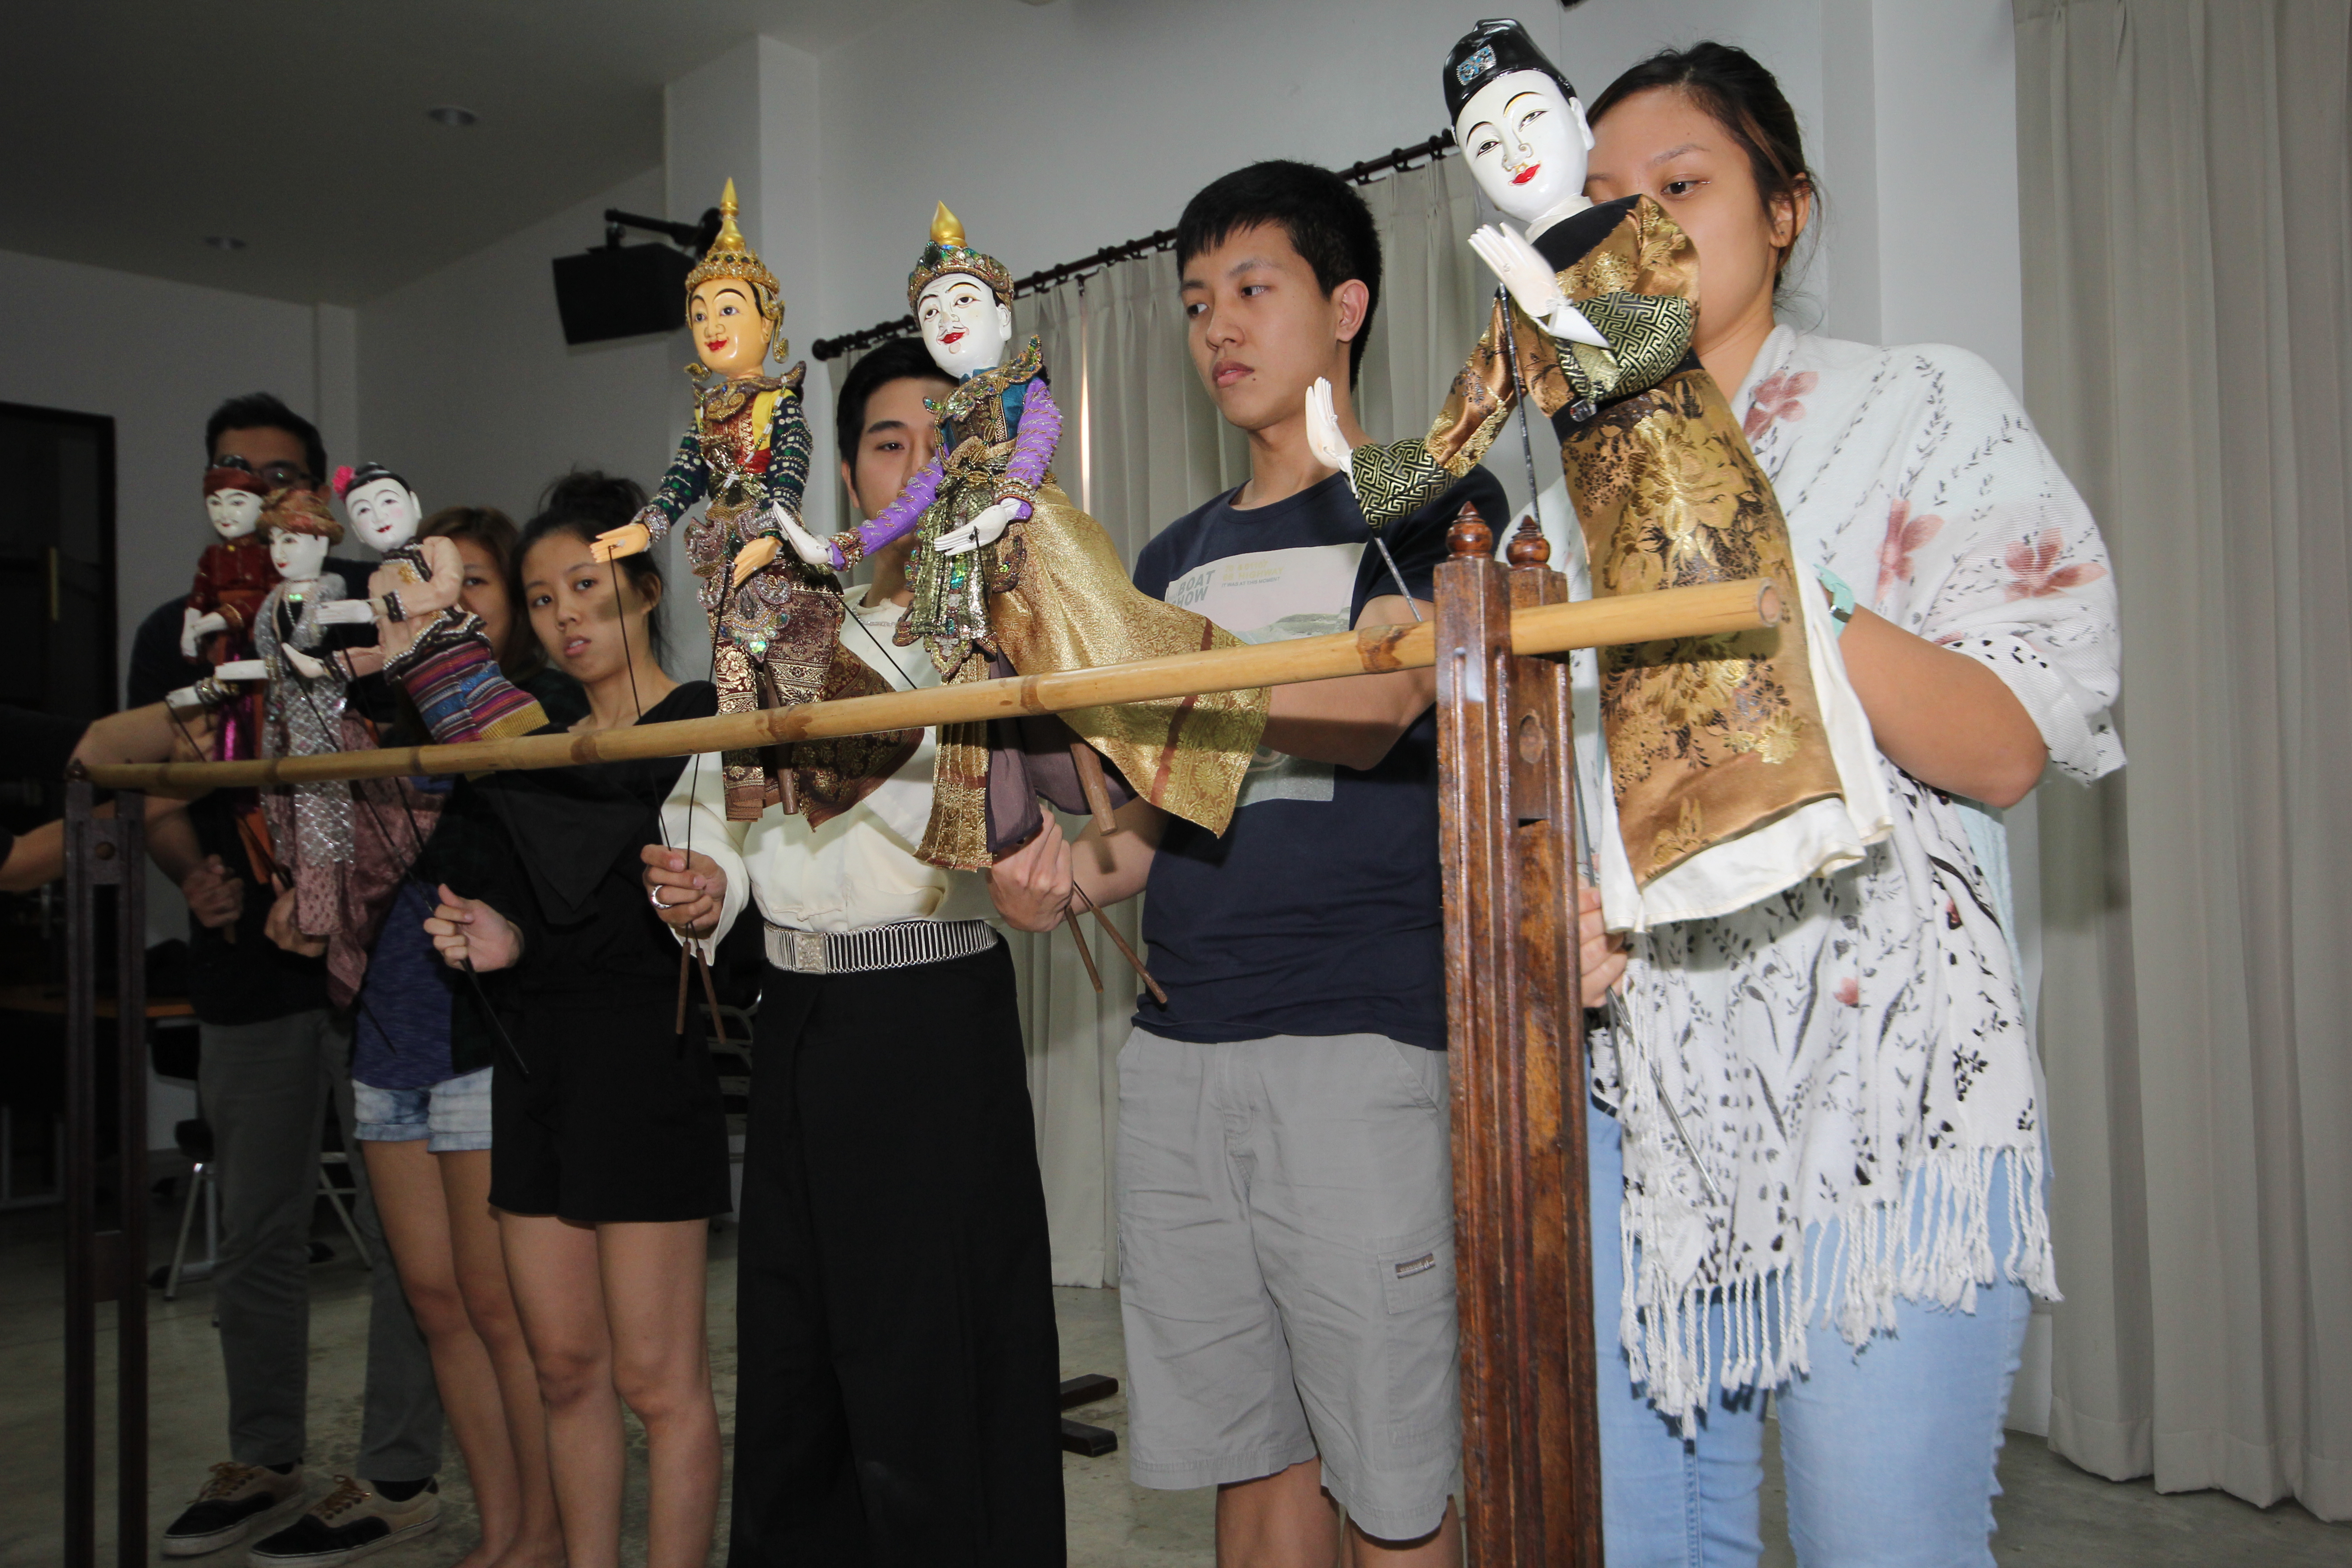 ผู้อำนวยการสำนักส่งเสริมศิลปวัฒนธรรม ให้เกียรติเป็นวิทยากรบรรยายในหัวข้อ Introduction to Thai Dancing - Introduction to Thai Puppetry และ Thai Lanna Dancing 